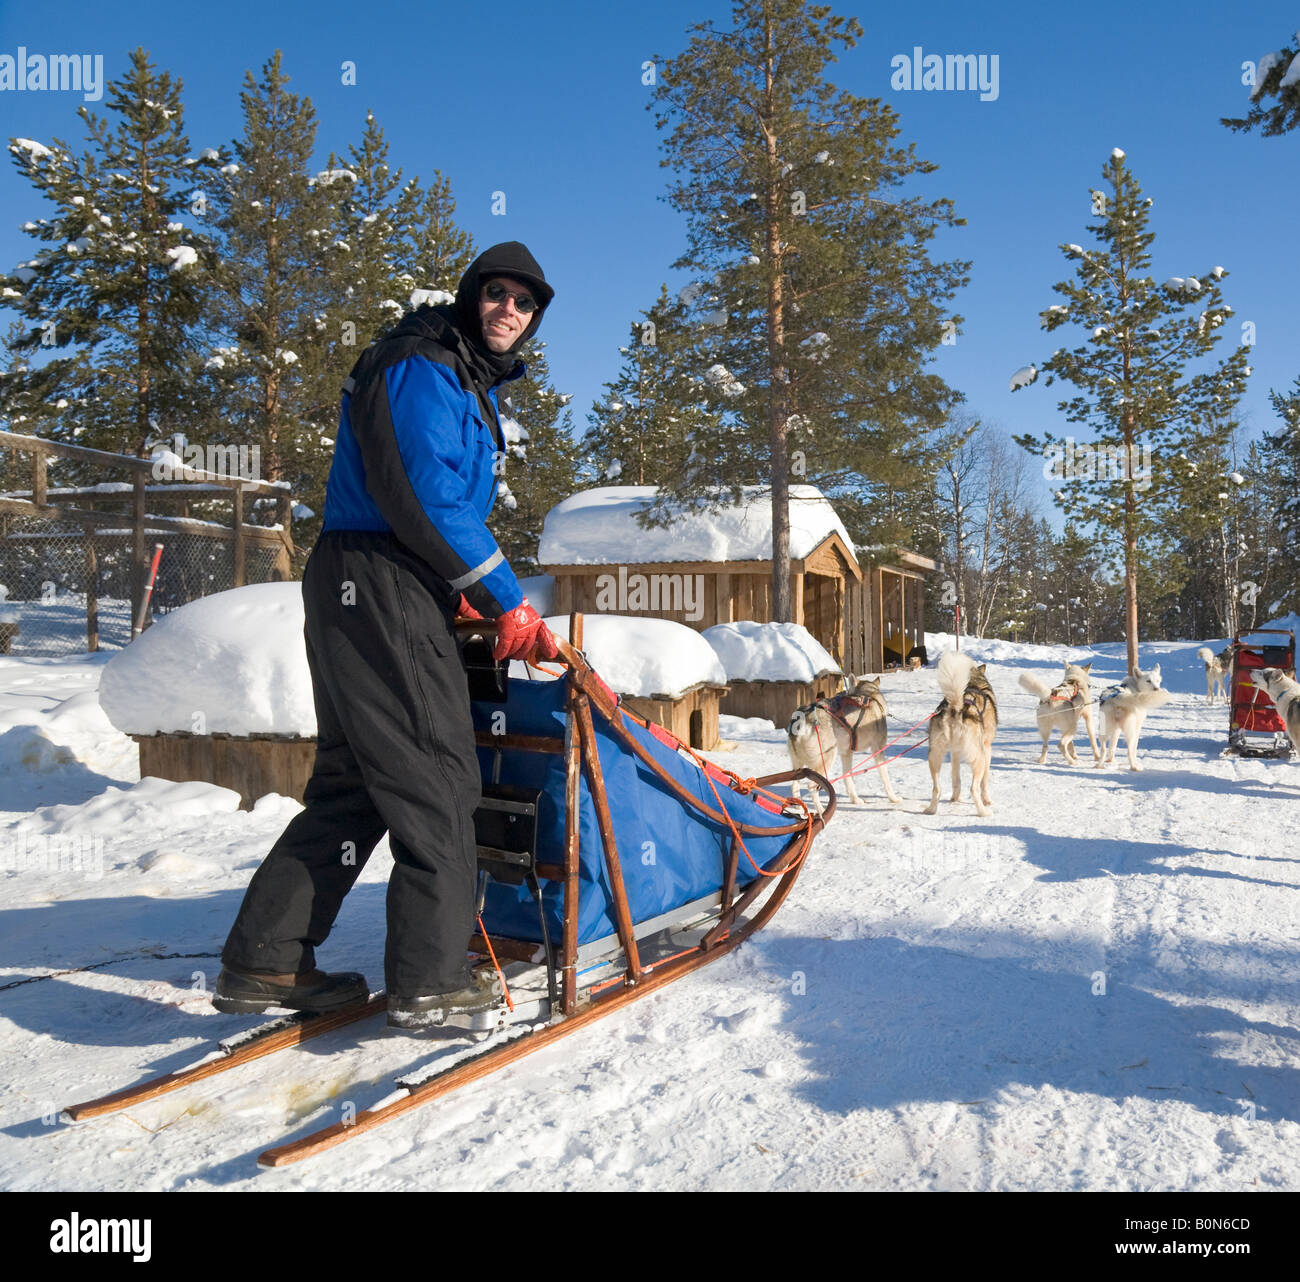 Ein Mann steht auf einem Schlitten auf eine Hurtigrutentickets Fahrt mit sibirischen Huskies in winterlichen Lappland / nördlichen Schweden Stockfoto